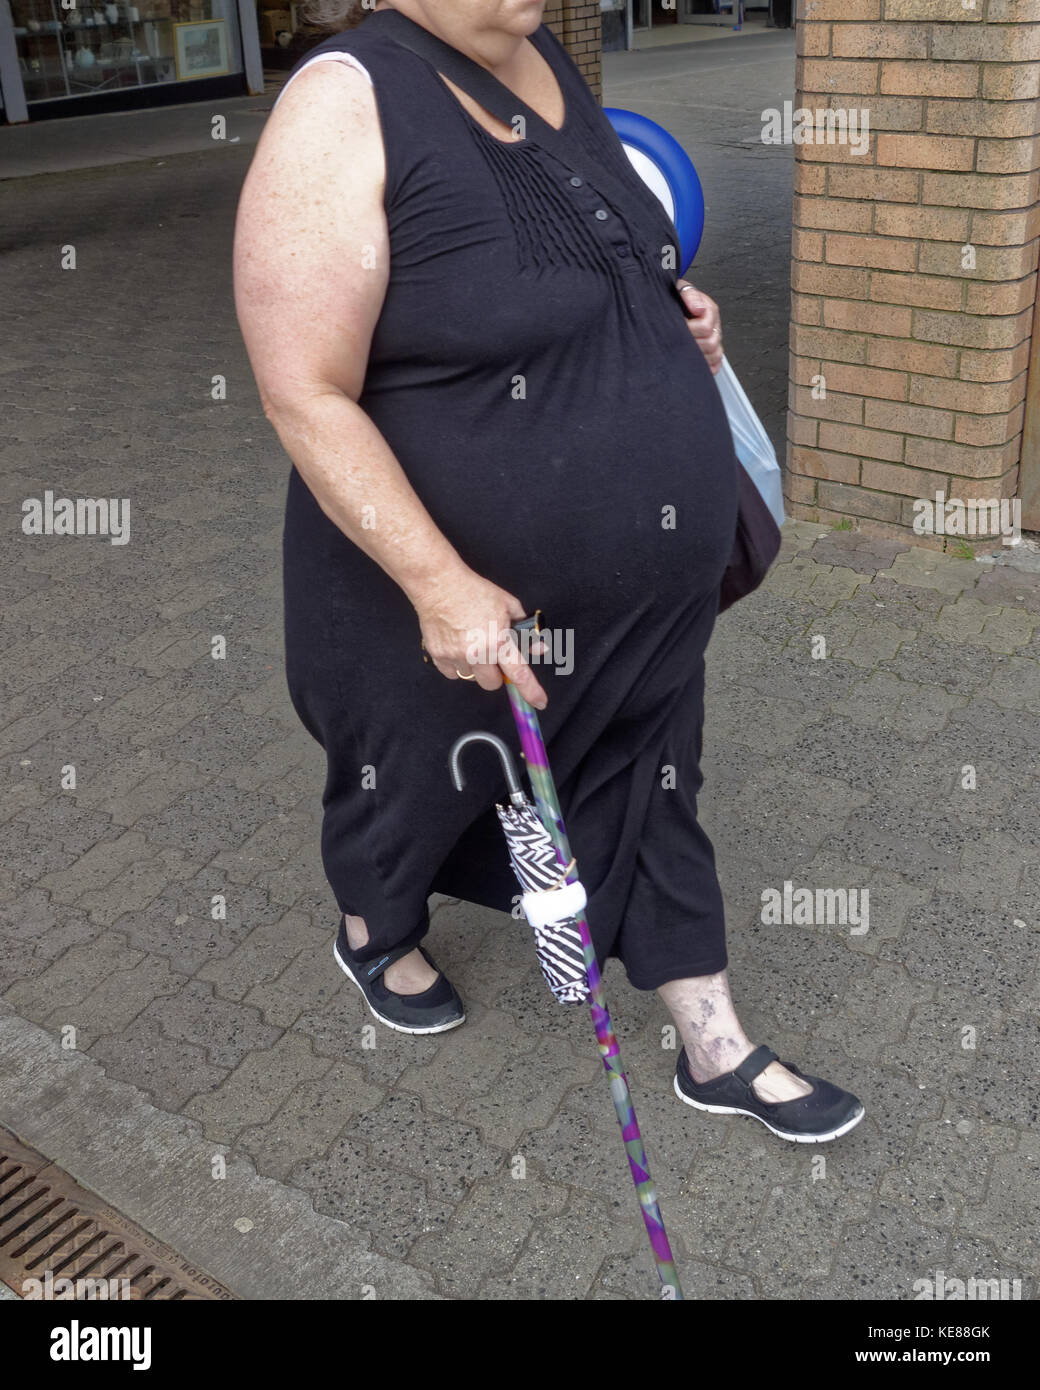 Große fat adipösen person Frau mit Stock abgeschnitten von vorne gesehen Stockfoto